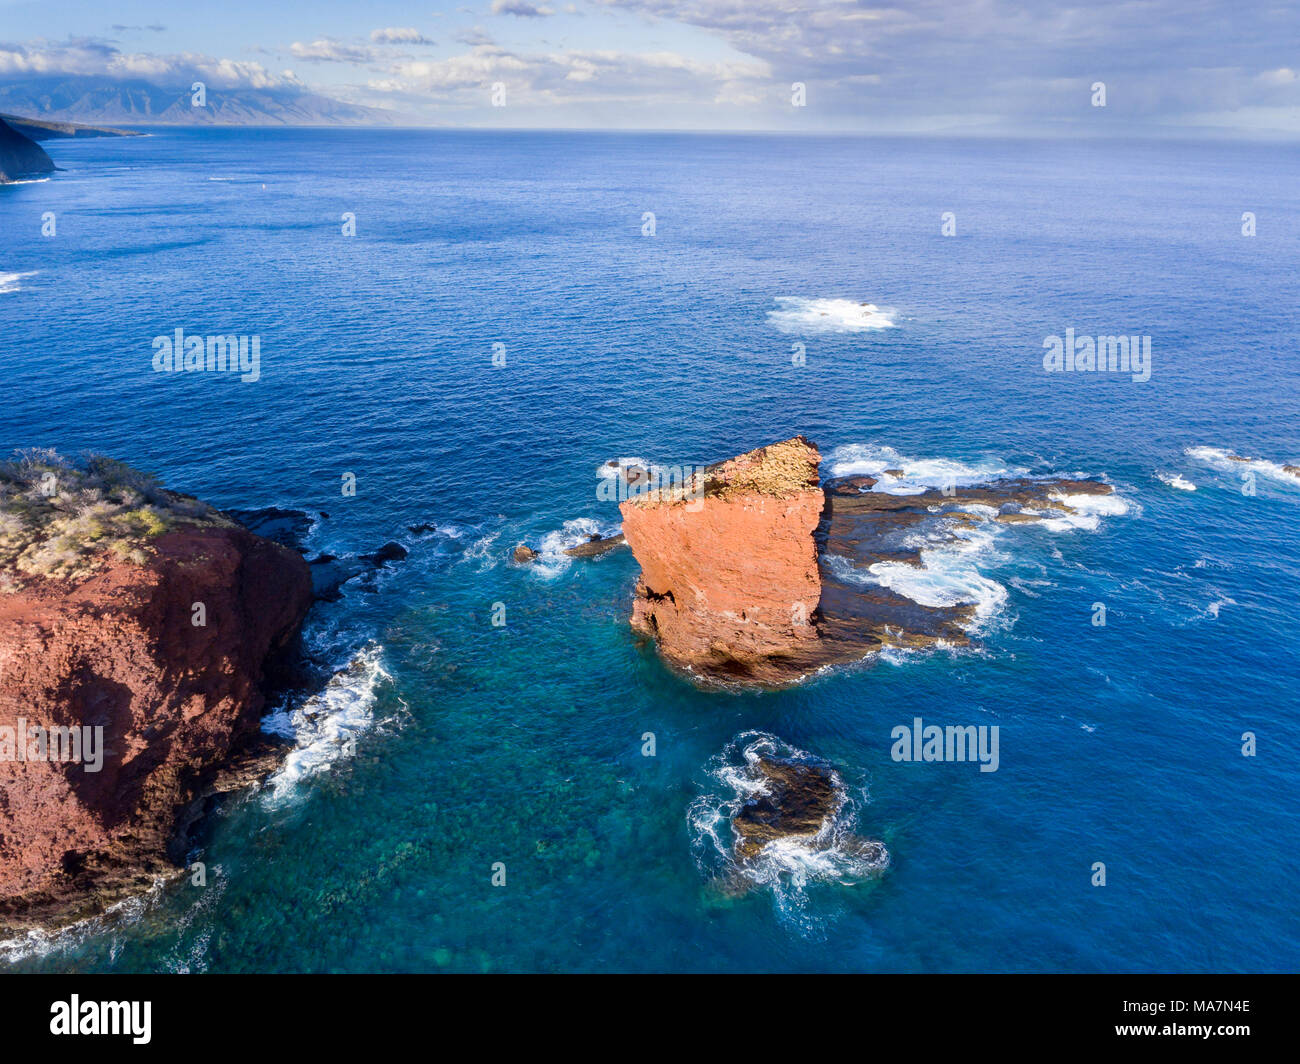 Puu Pehe Rock, auch bekannt als "Sweetheart Rock", eines der bekanntesten Wahrzeichen Lanai, Lanai Insel, Hawaii, USA. Gerade vor/hinter dem Felsen ist Stockfoto